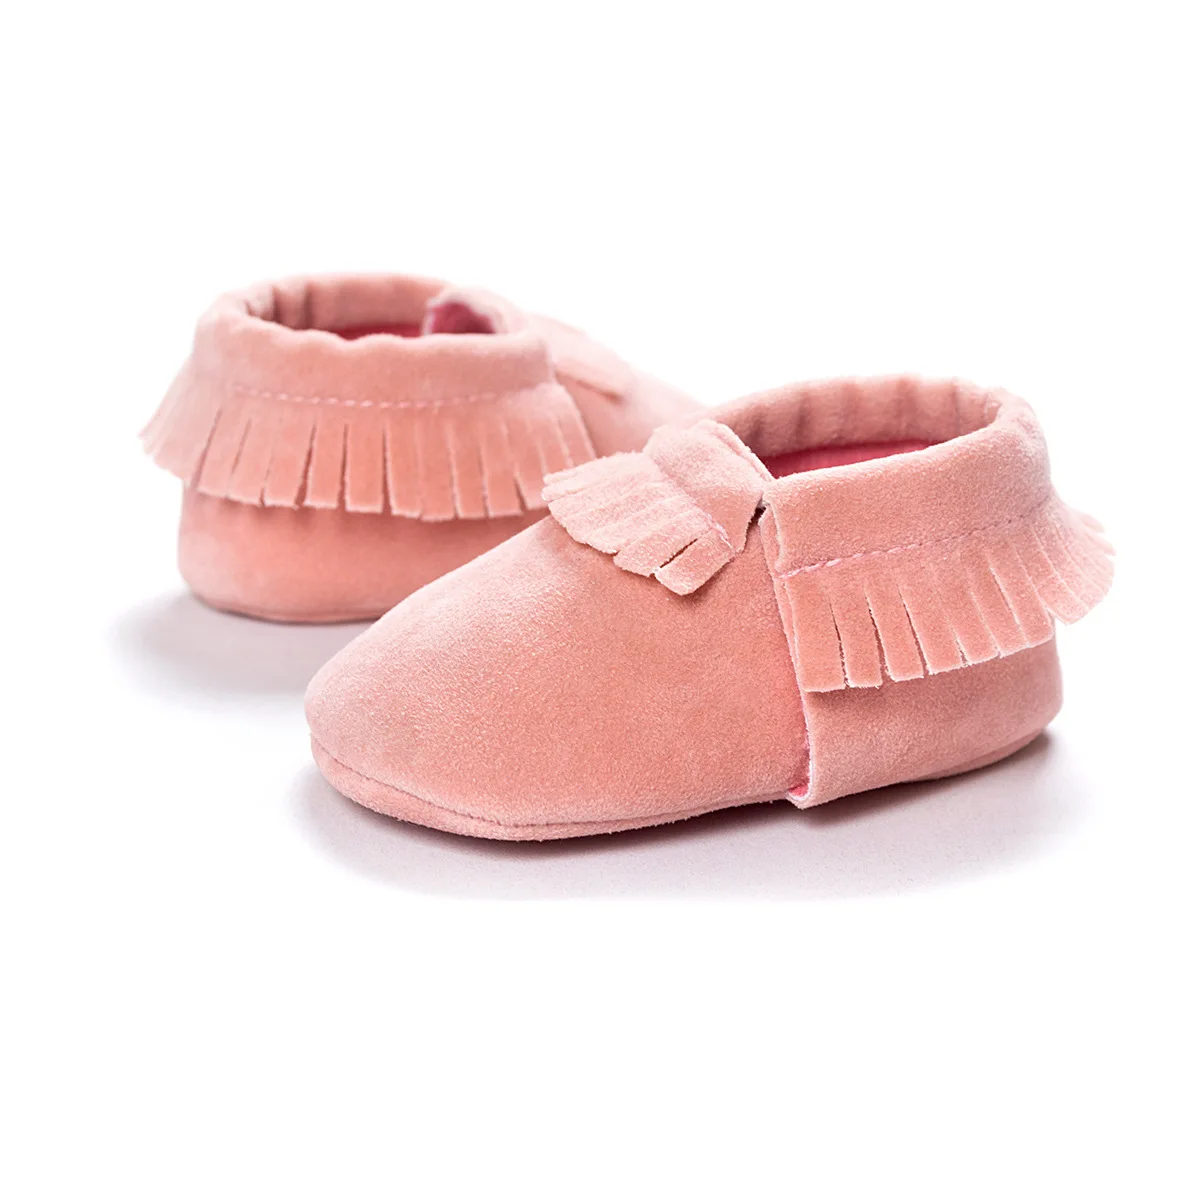 Koovan/детская обувь ребенка; "Принцесса" для деток с года до трех для маленьких мальчиков и девочек Firstwalkers кисточкой функция "анти-потеря" для новорожденных из замшевой кожи